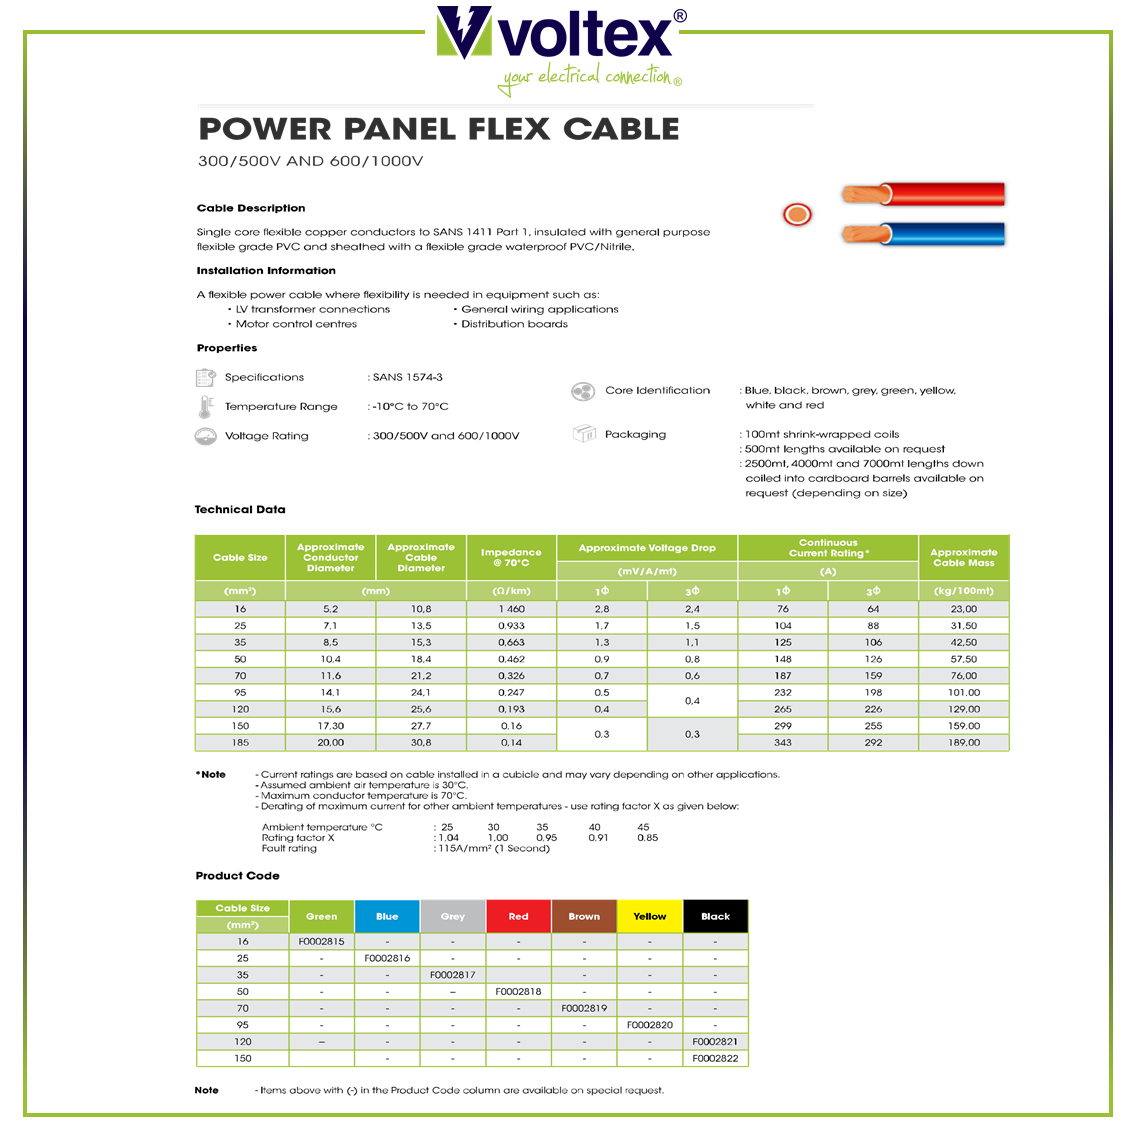 VOLTEX - Power Panel Flex Cable Catalogue